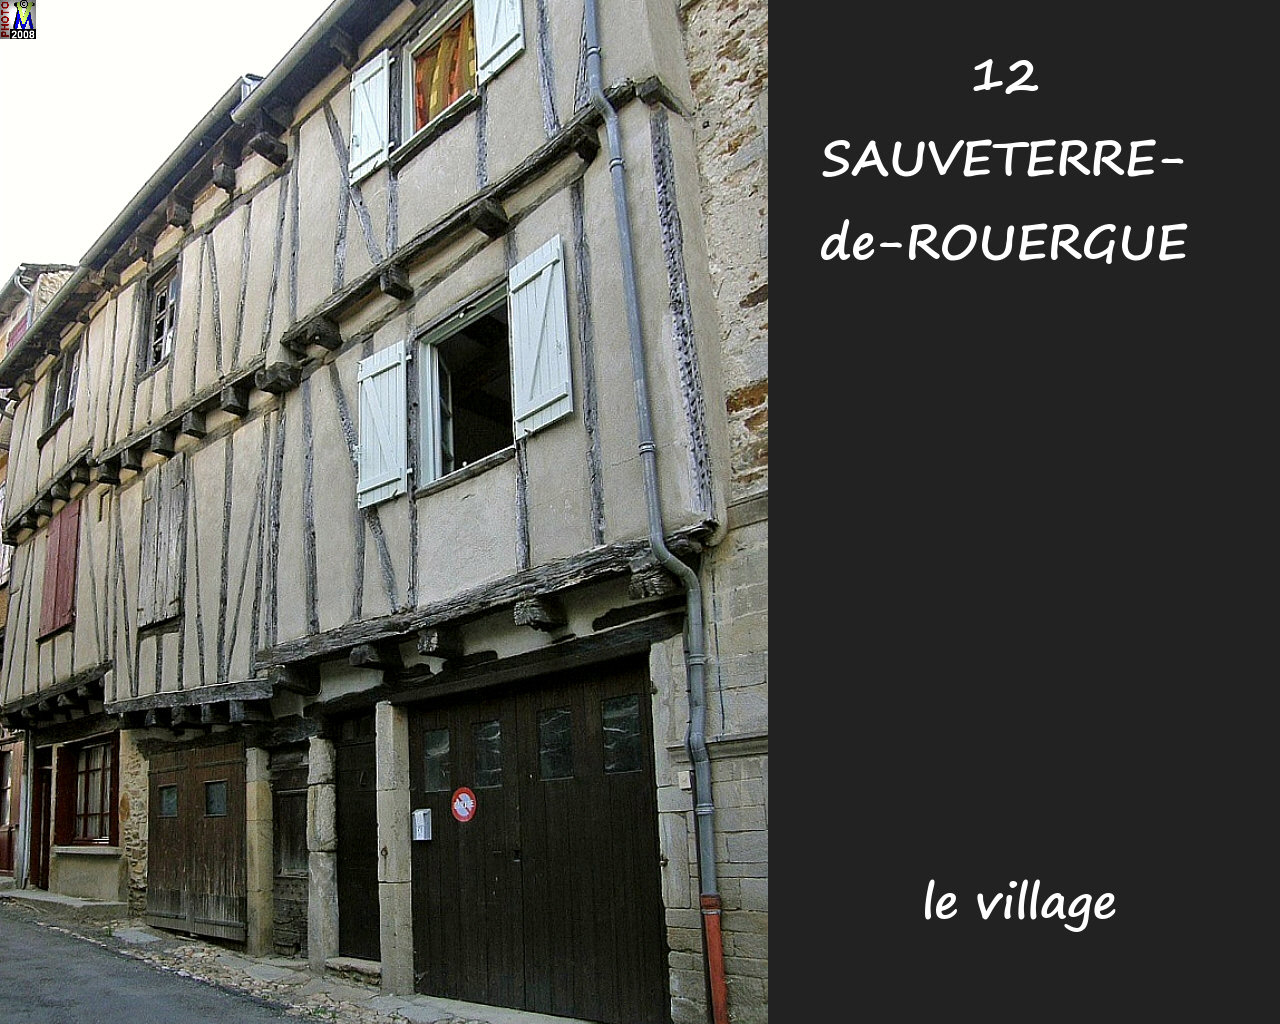 12SAUVETERRE-ROUERGUE_village_132.jpg